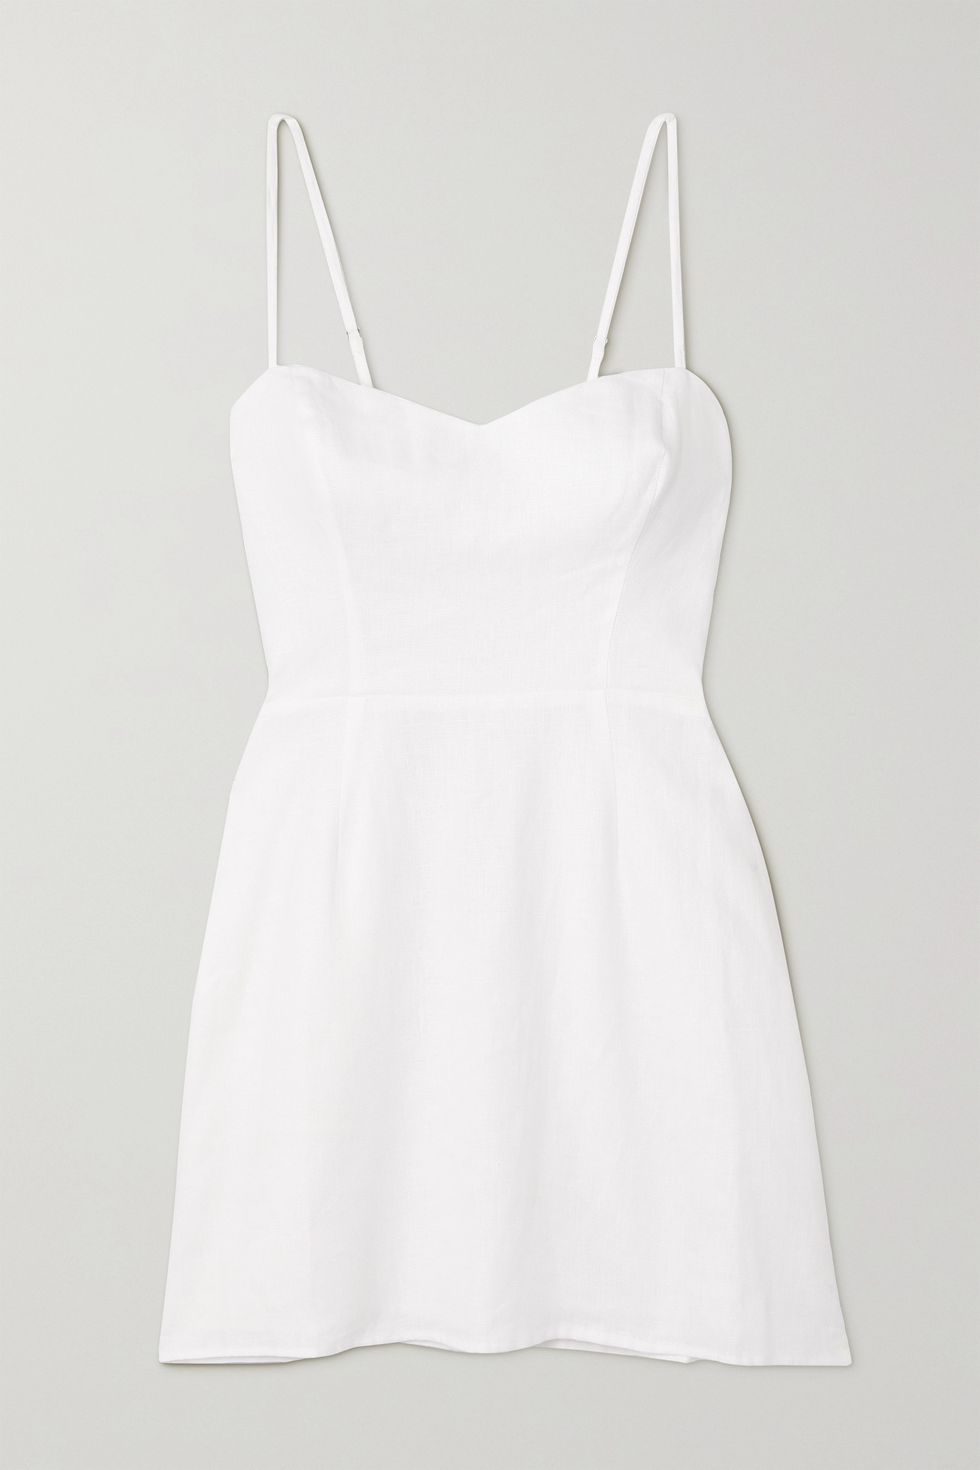 Roarke linen mini dress